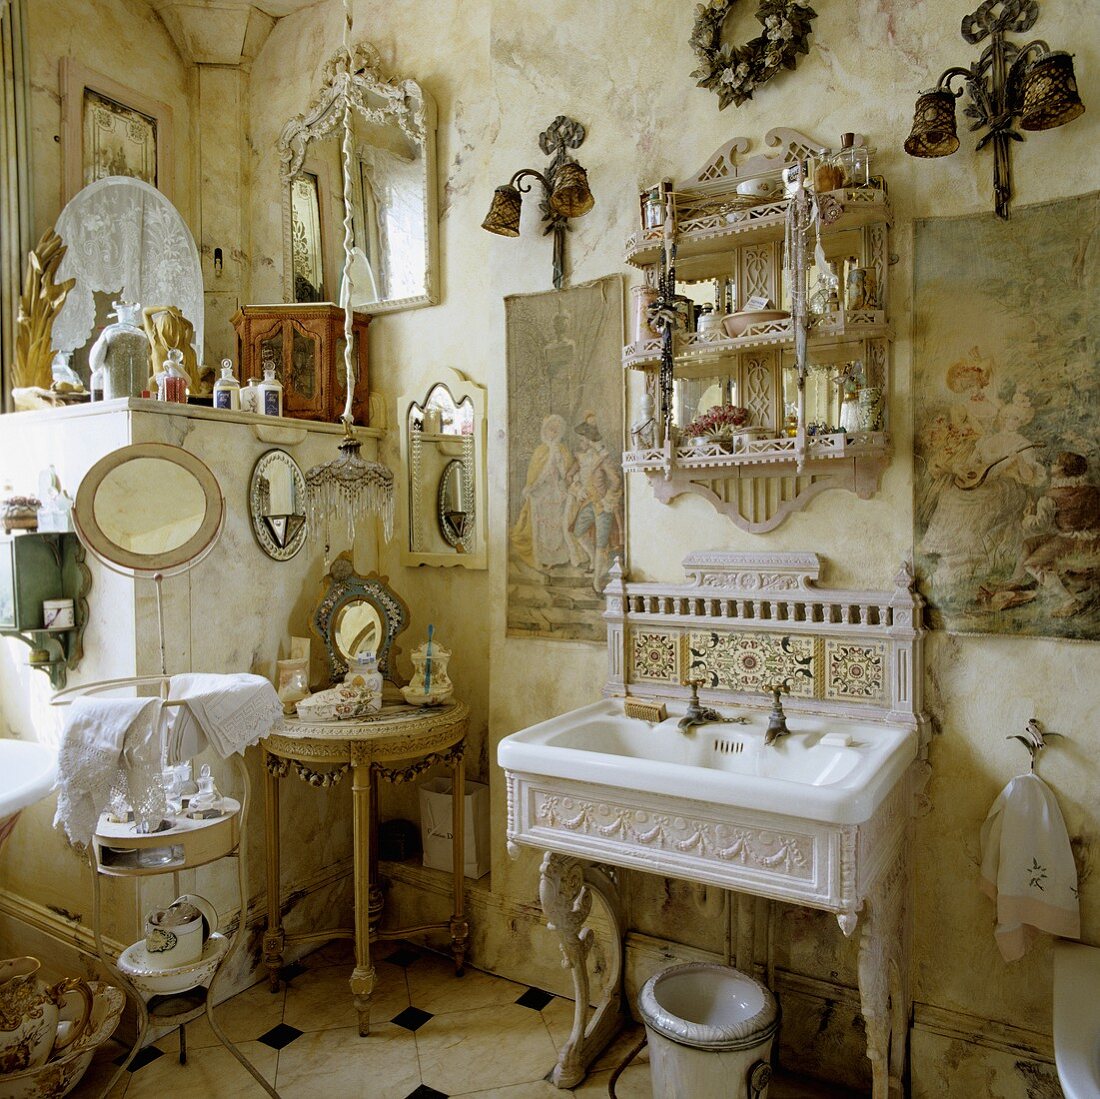 Badezimmer im Rokokostil - weisses Waschbecken mit gusseisernem Gestell und verspieltes Kleinmobiliar